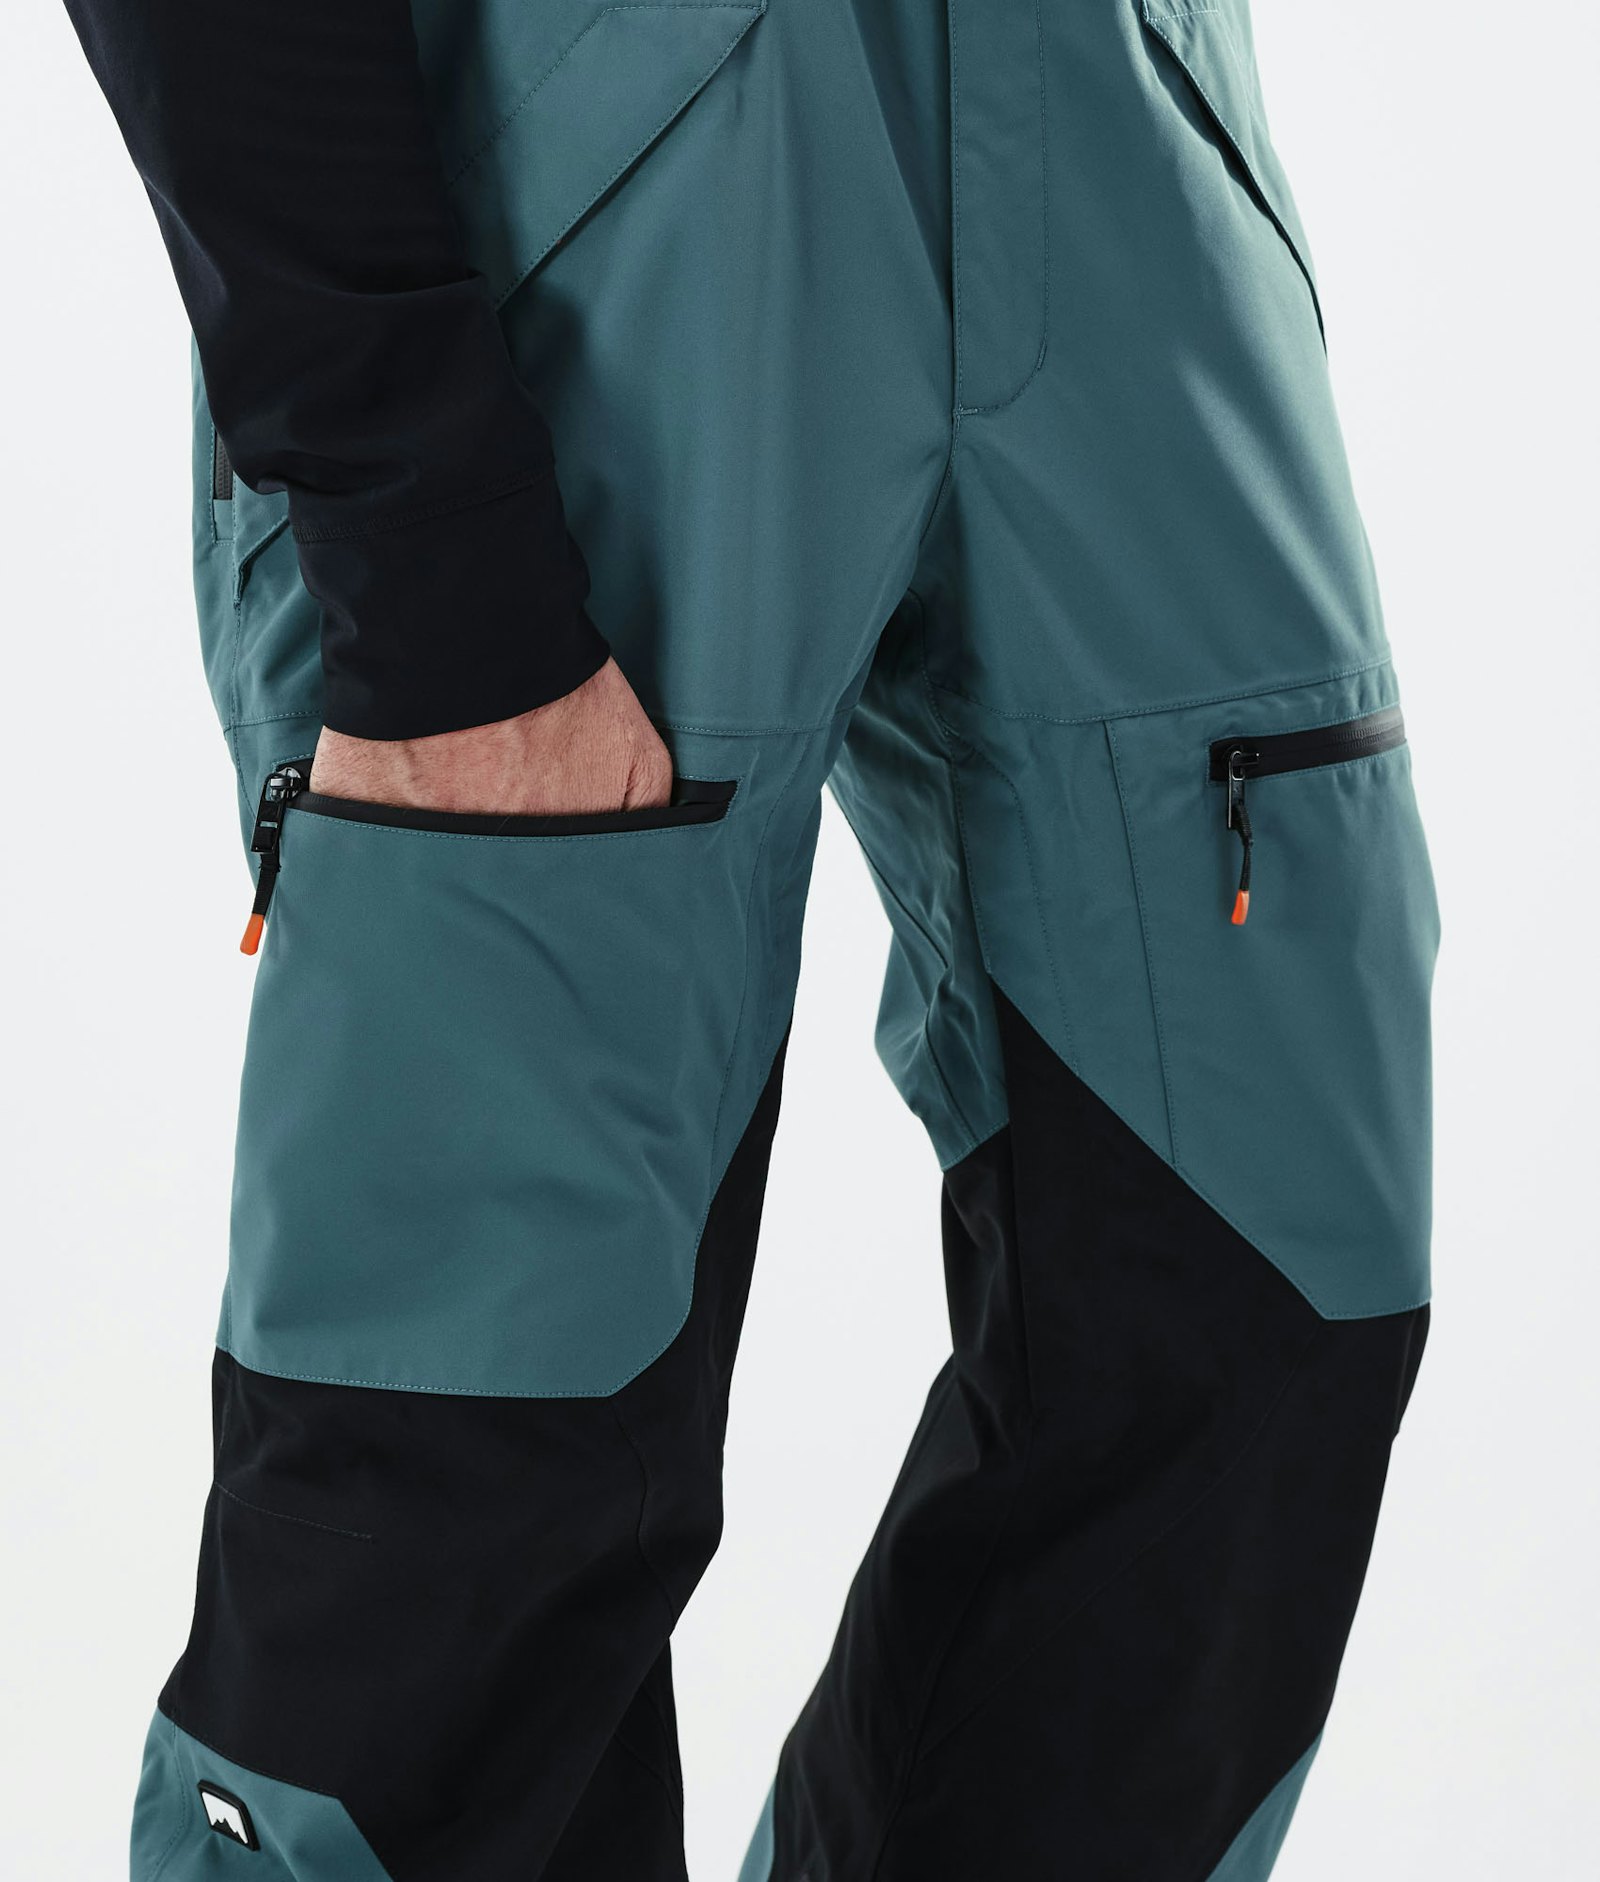 Moss 2021 Ski Pants Men Atlantic/Black, Image 6 of 6